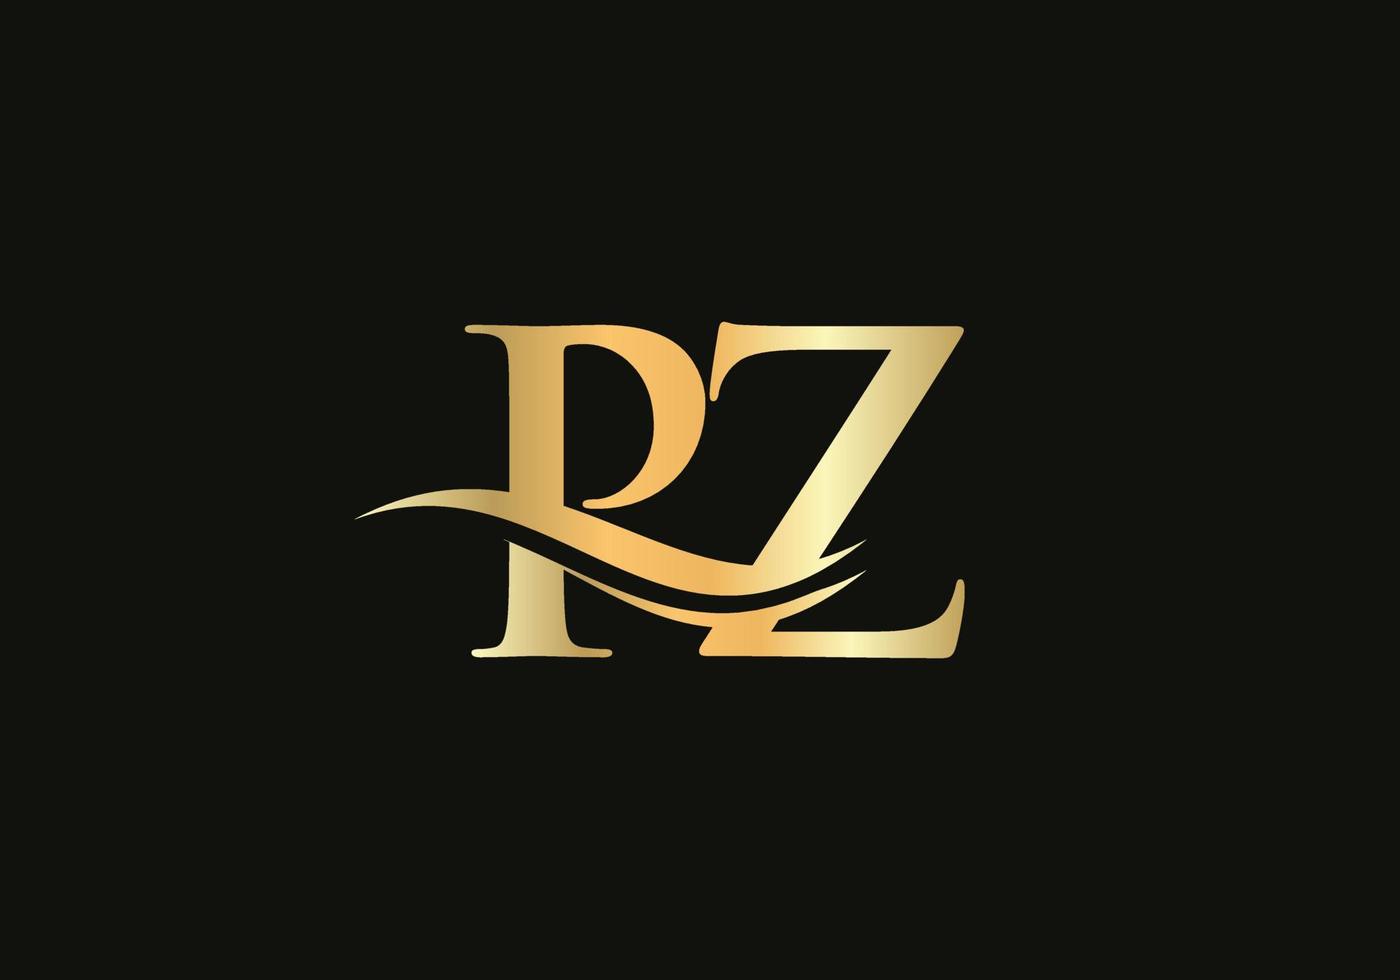 susa brev pz logotyp design för företag och företag identitet. vatten Vinka pz logotyp med modern trendig vektor